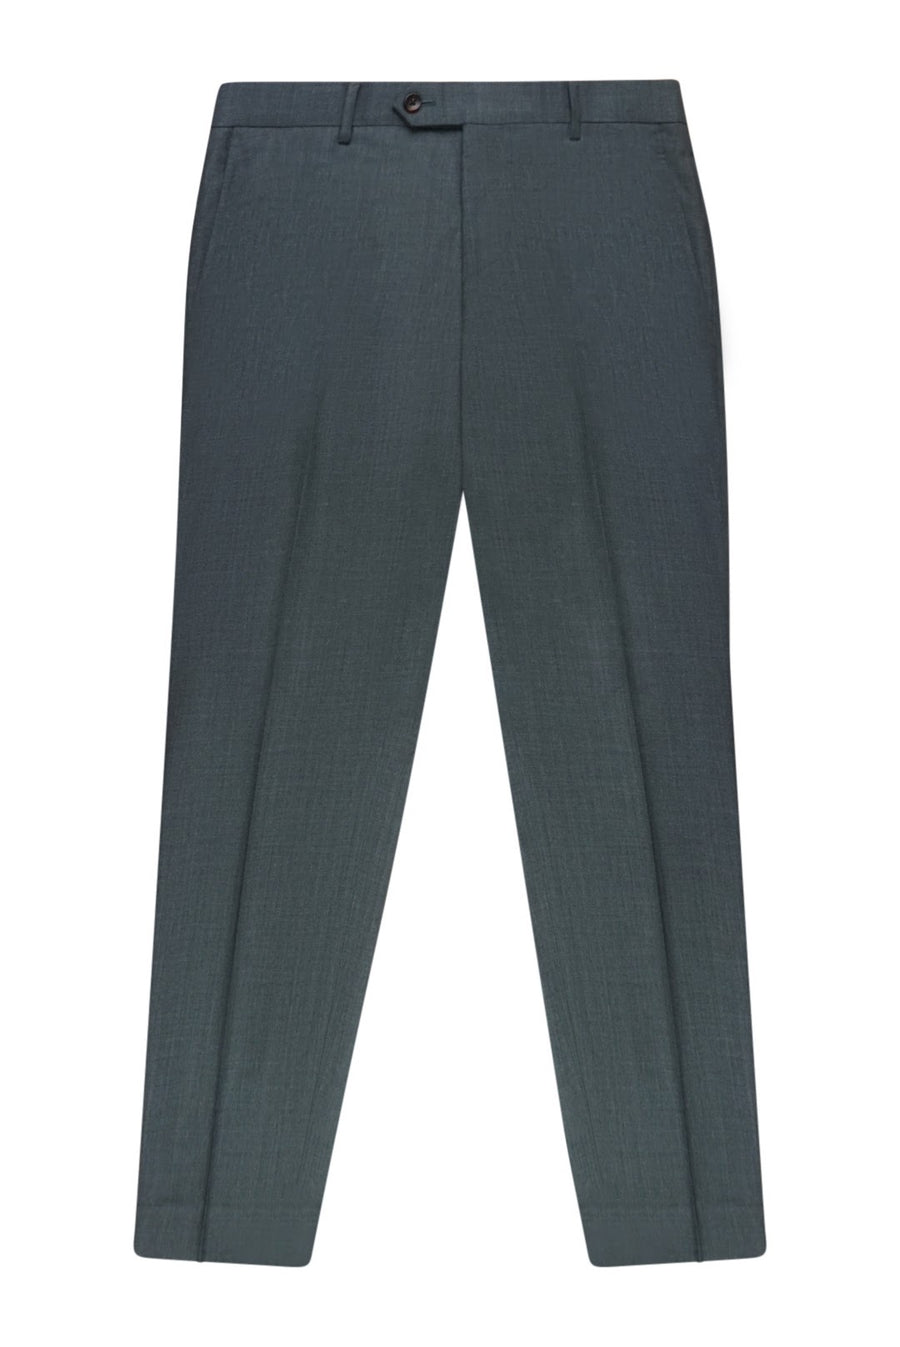 Medium Grey Slim Fit Suit Pant